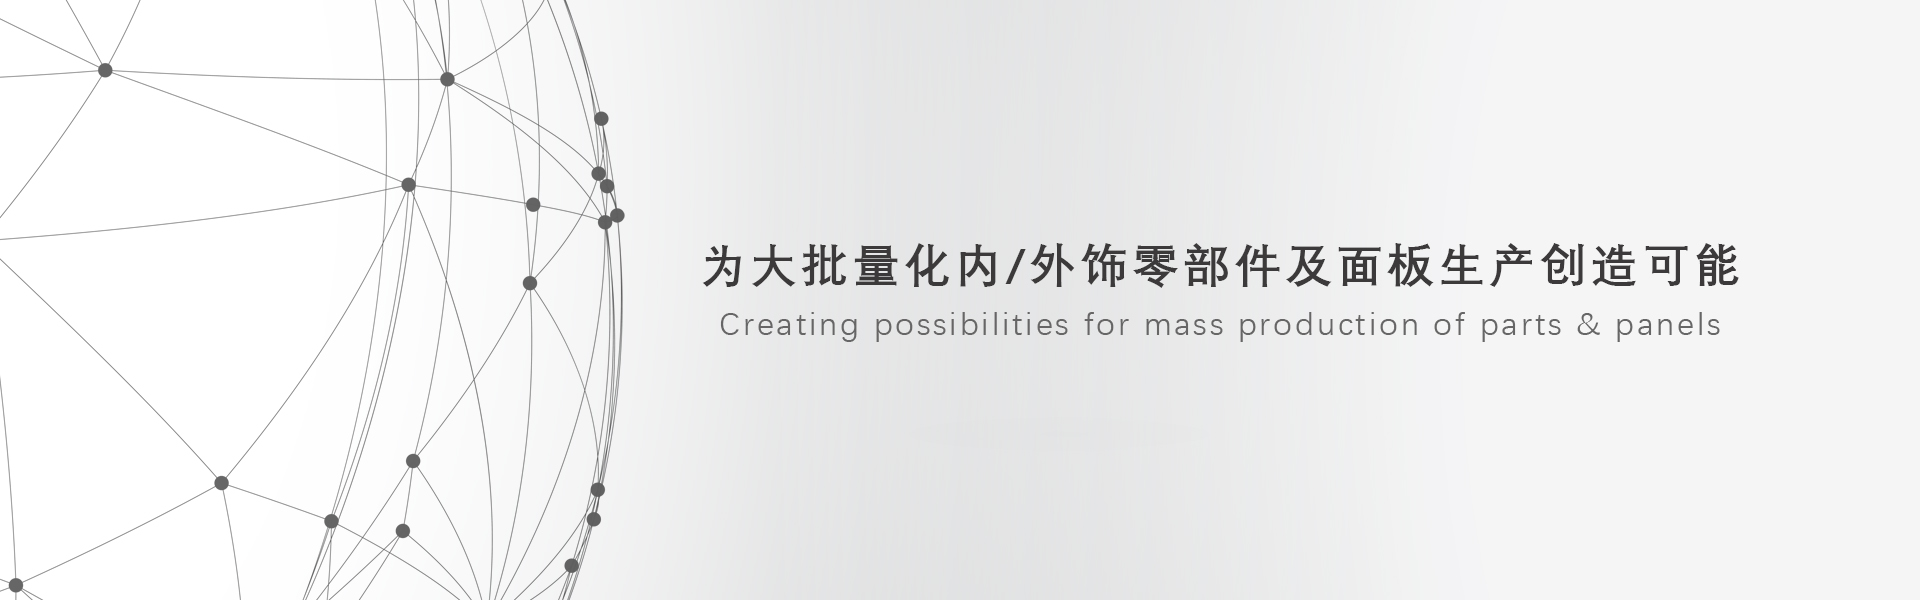 百乐博(中国游)官方网站